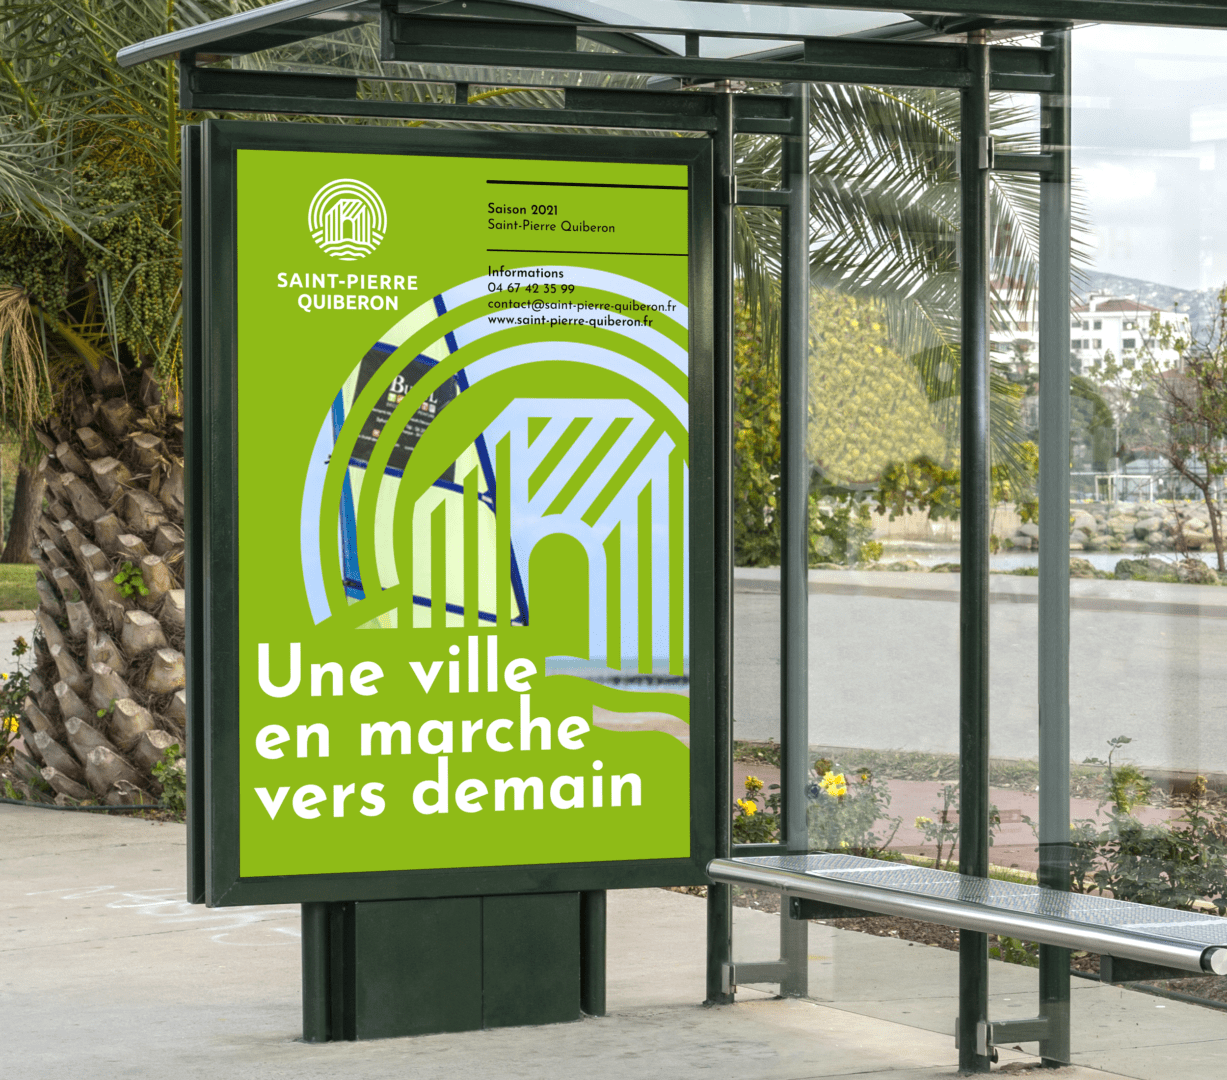 Affiches d'abribus de la ville de Saint-Pierre Quiberon